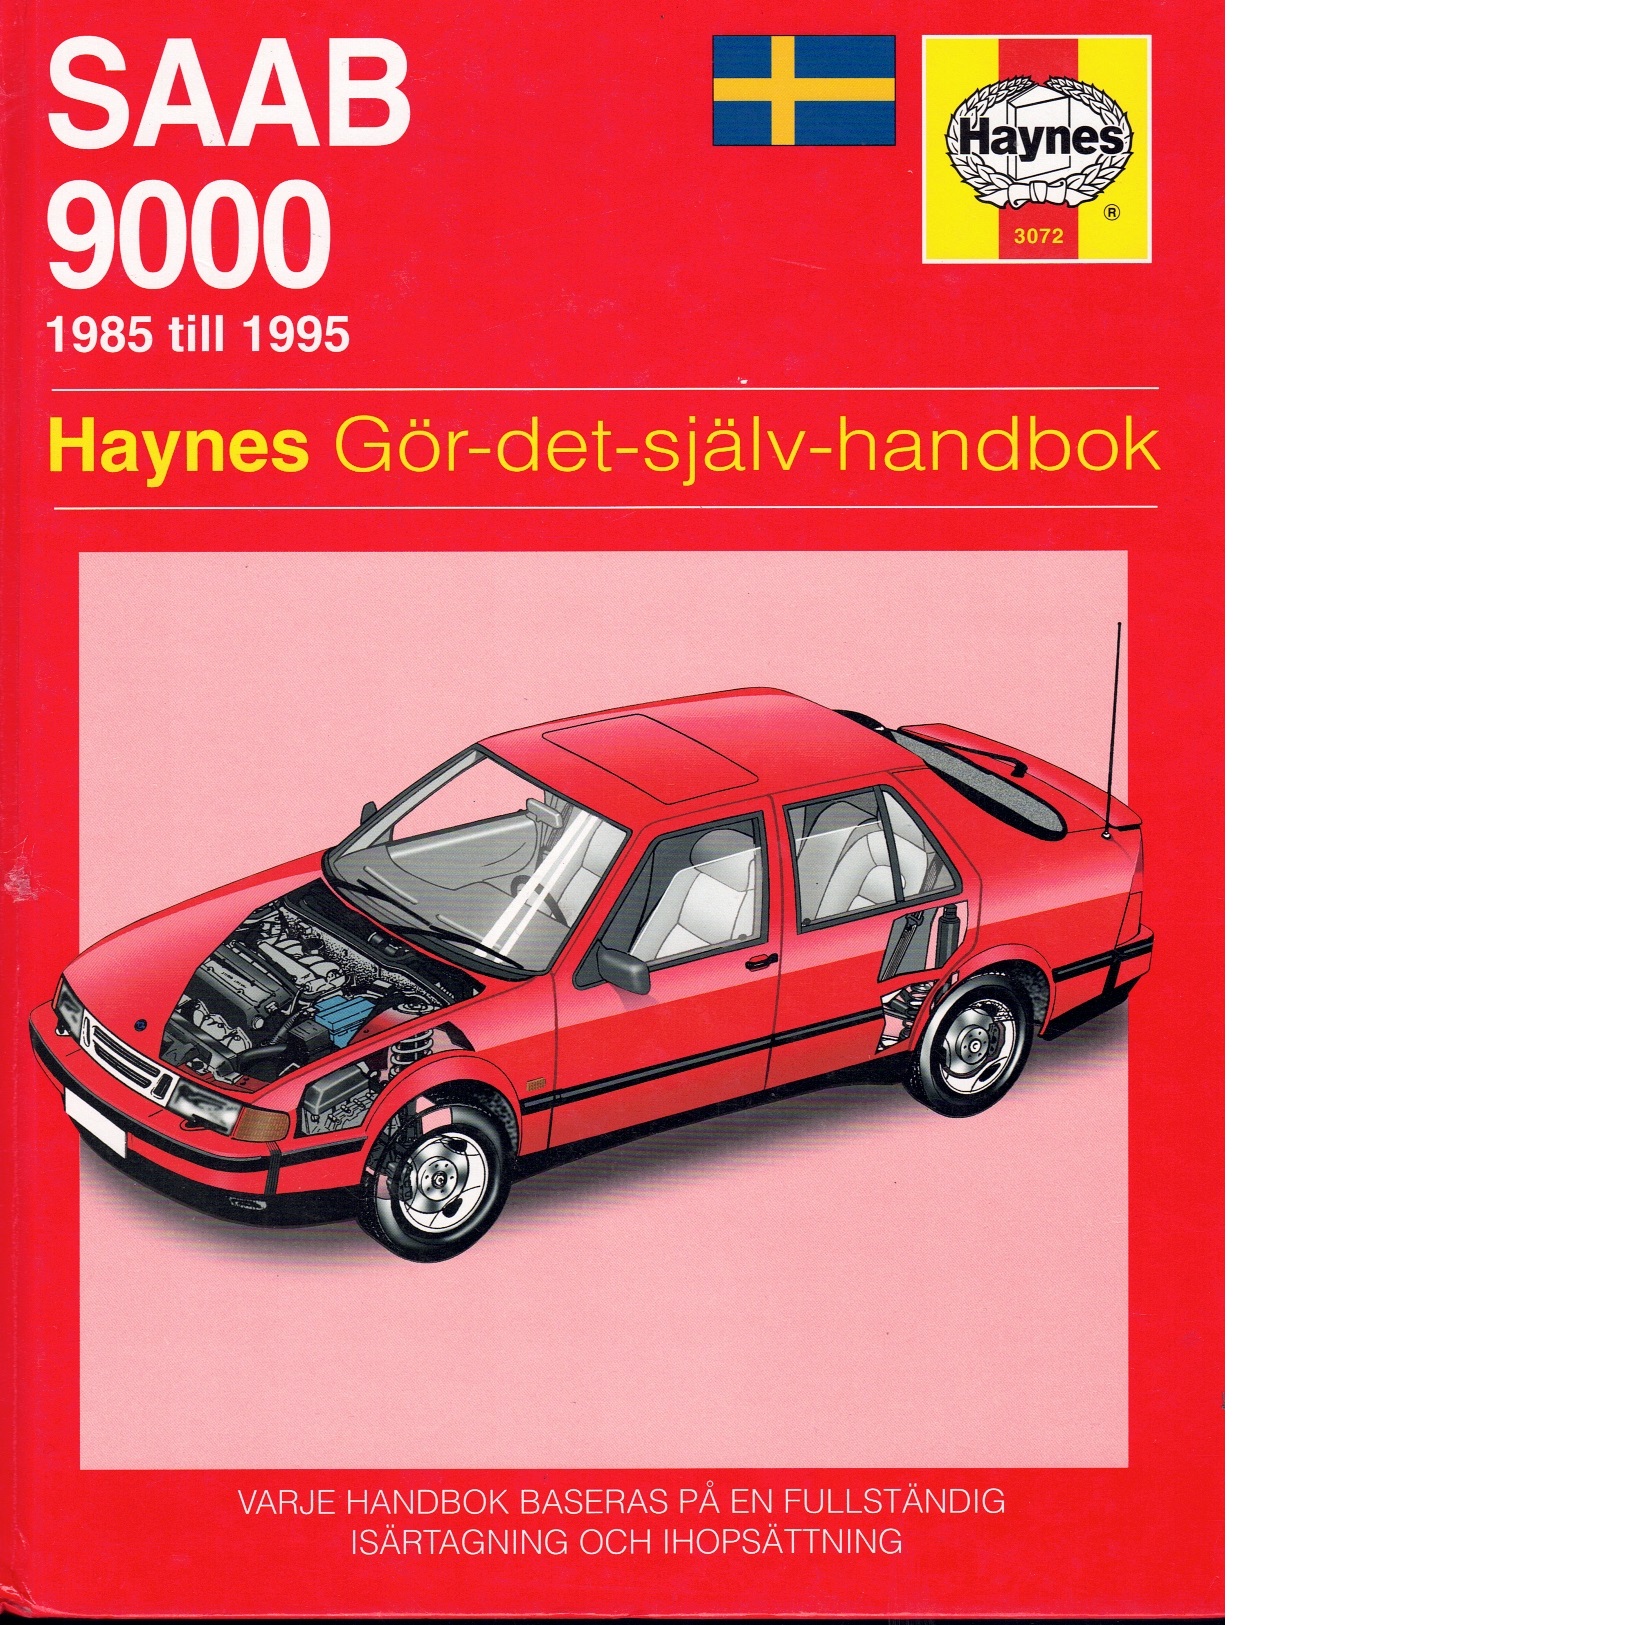 SAAB 9000 1985 till 1995 - Red.